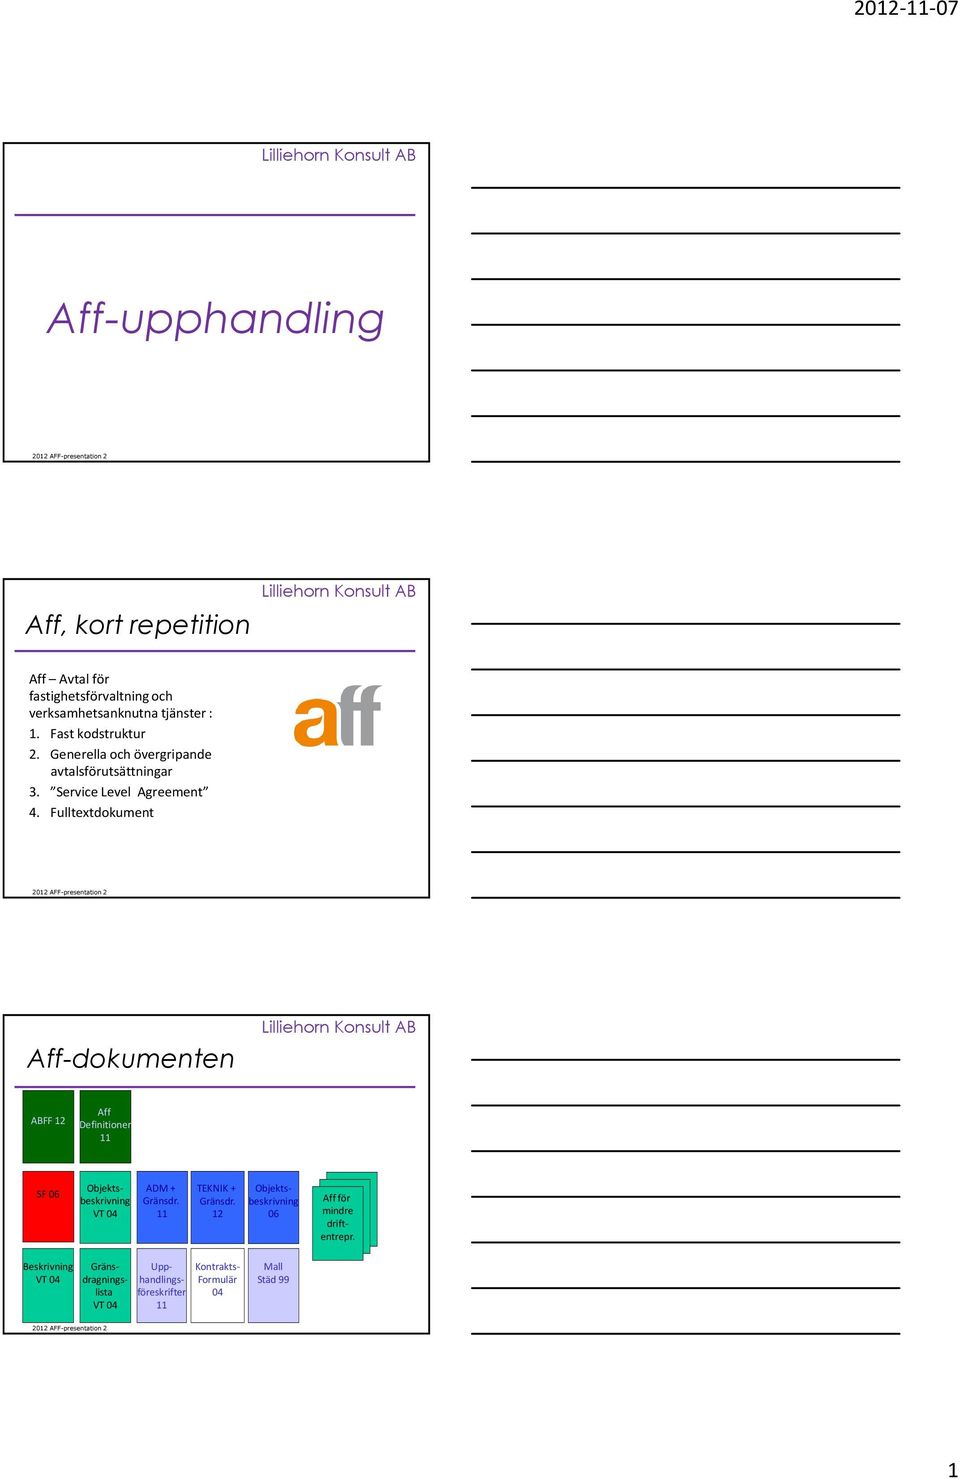 Fulltextdokument Aff-dokumenten ABFF 12 Aff Definitioner 11 SF 06 Objektsbeskrivning VT 04 ADM + Gränsdr. 11 TEKNIK + Gränsdr.